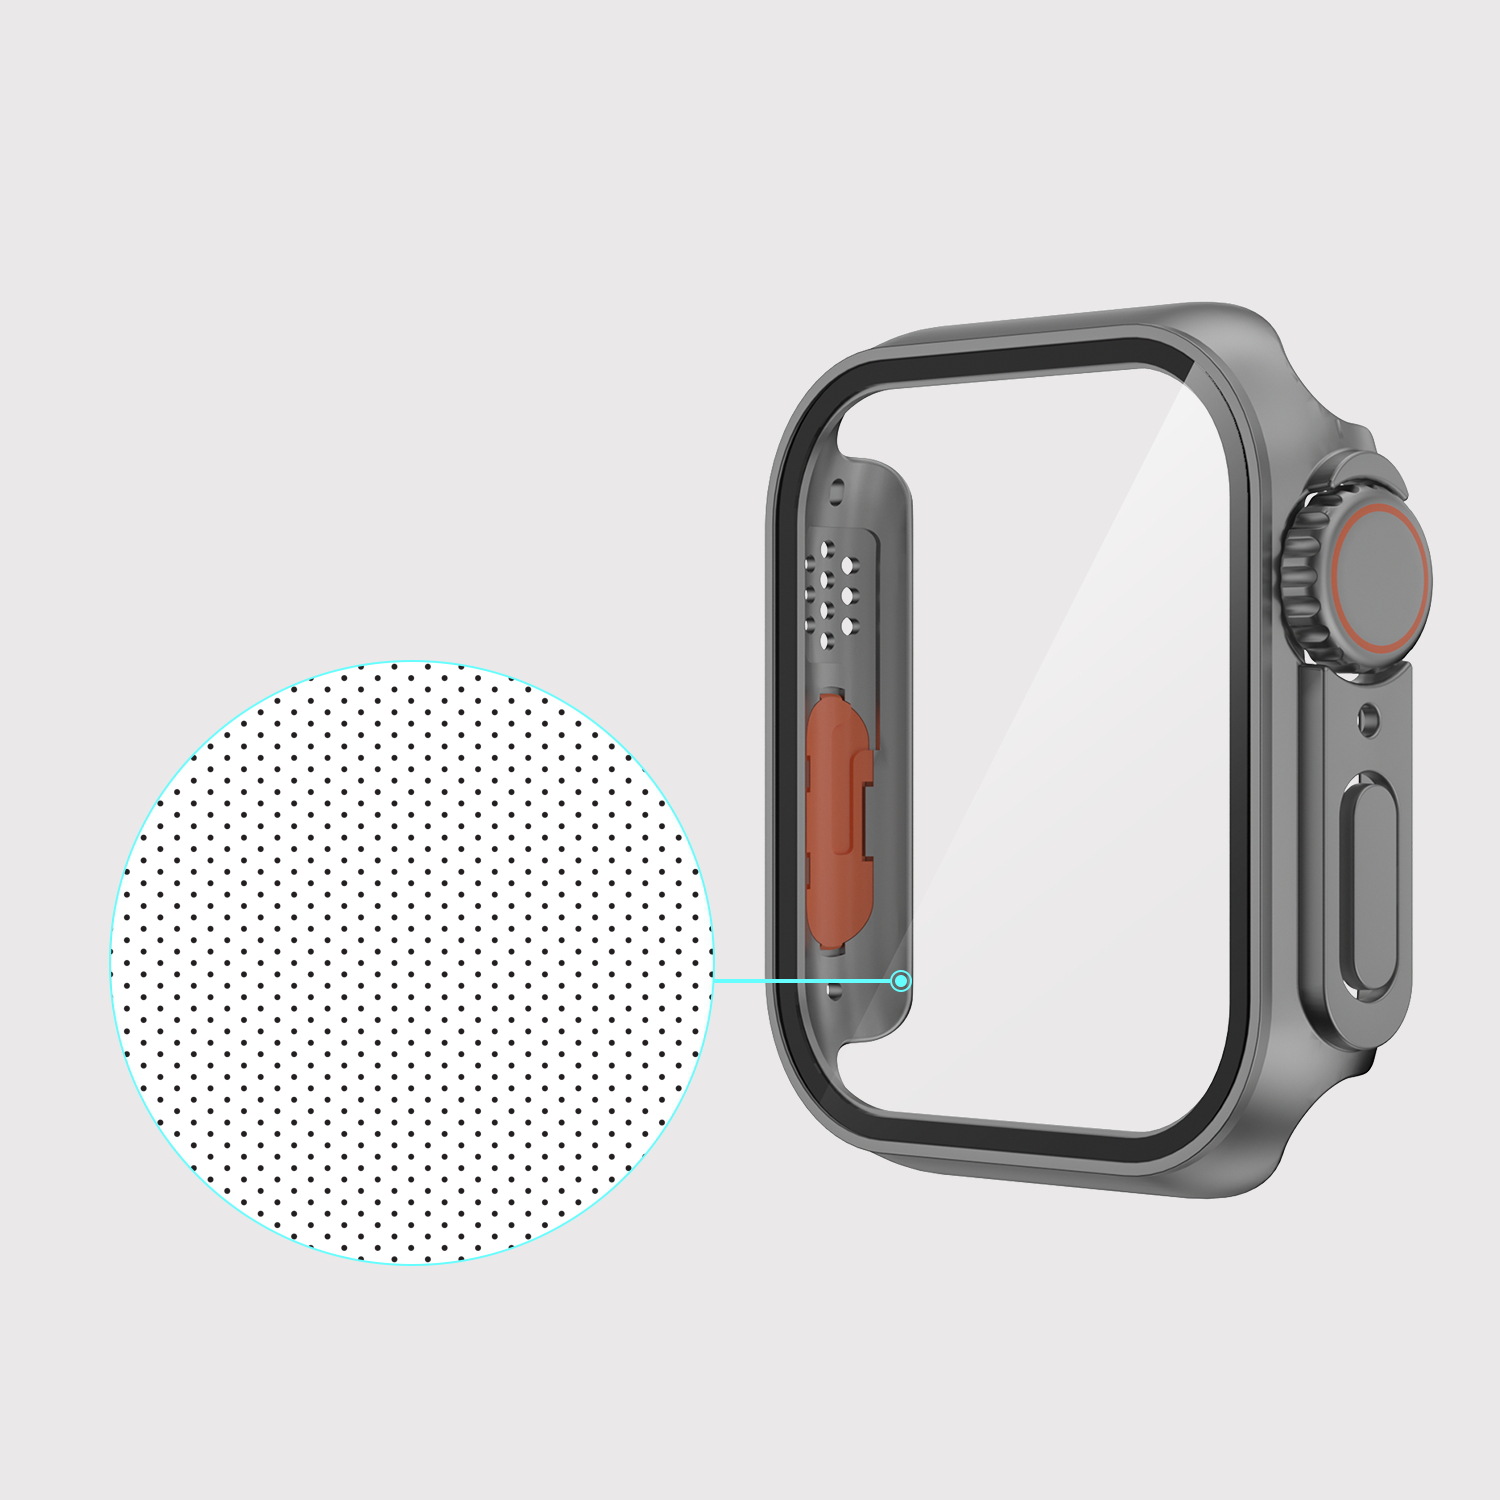 Ốp Case PC Kính Cường Lực Dành Cho Apple Watch Series 4-8/ SE Kiểu Dáng Ultra Curved Glass - Hàng Chính Hãng